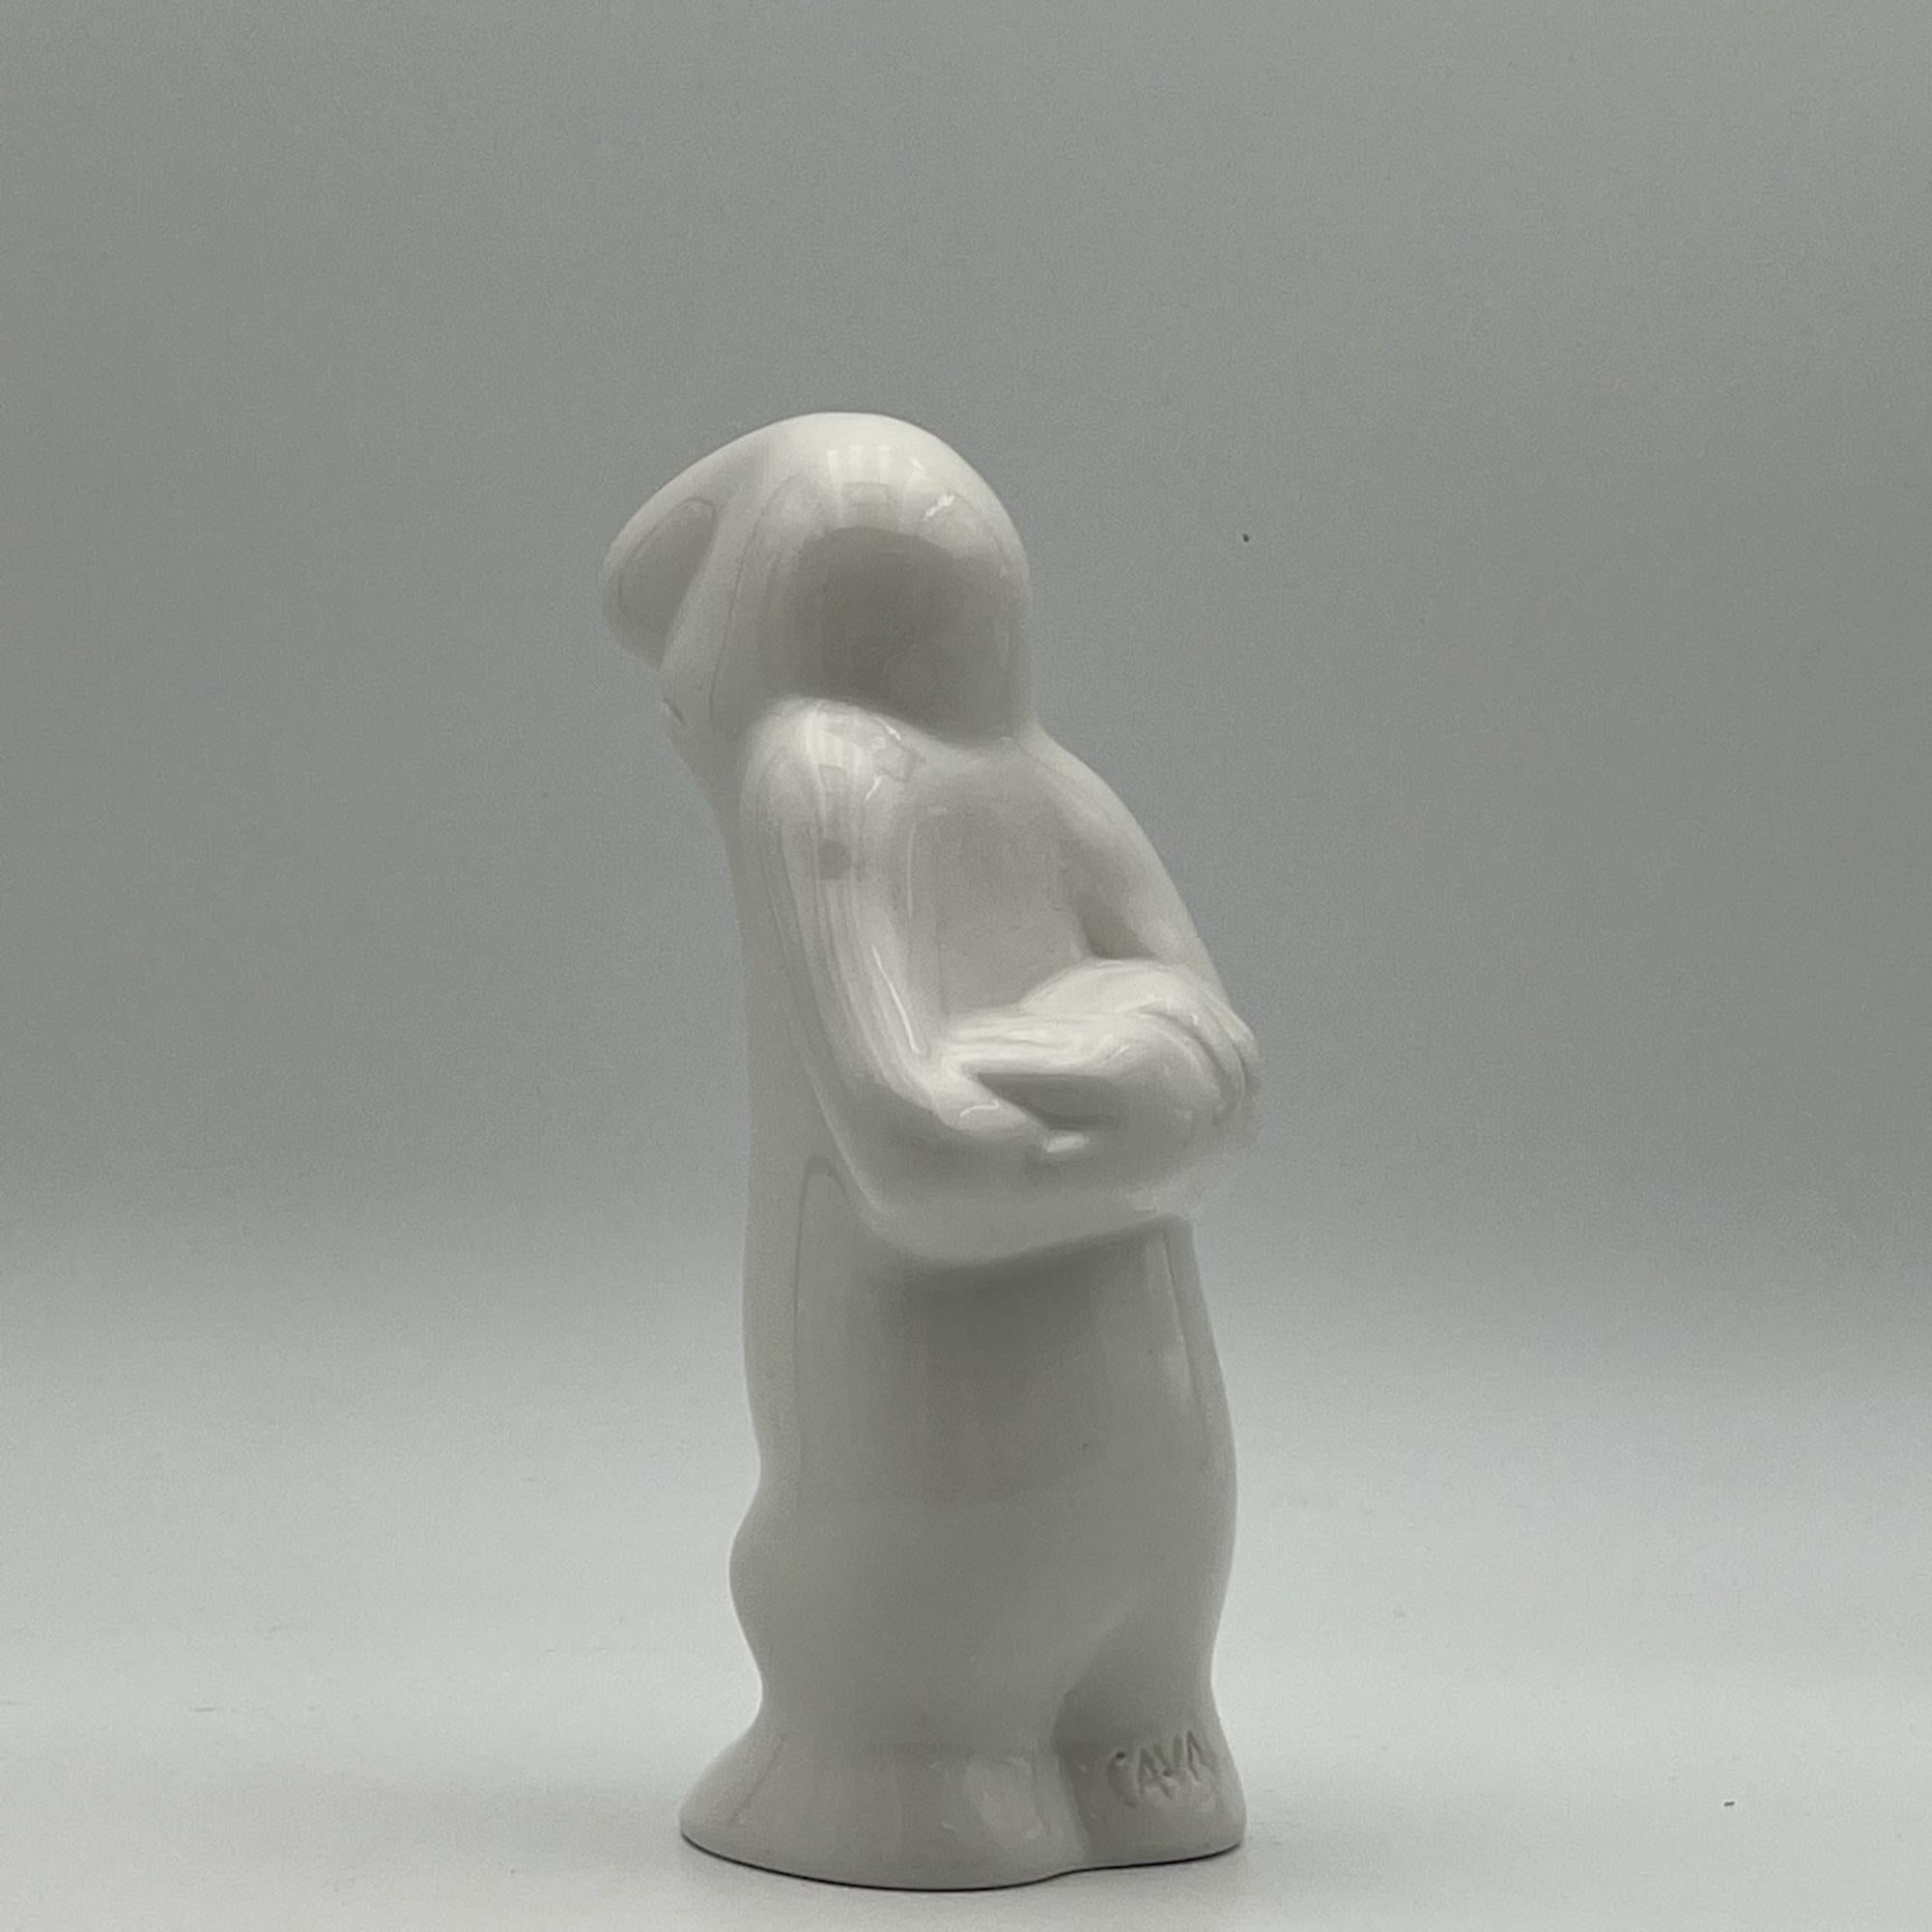 Mid-20th Century Osvaldo Cavandoli La Linea 'brooding' iconic ceramic figurine - 1960s